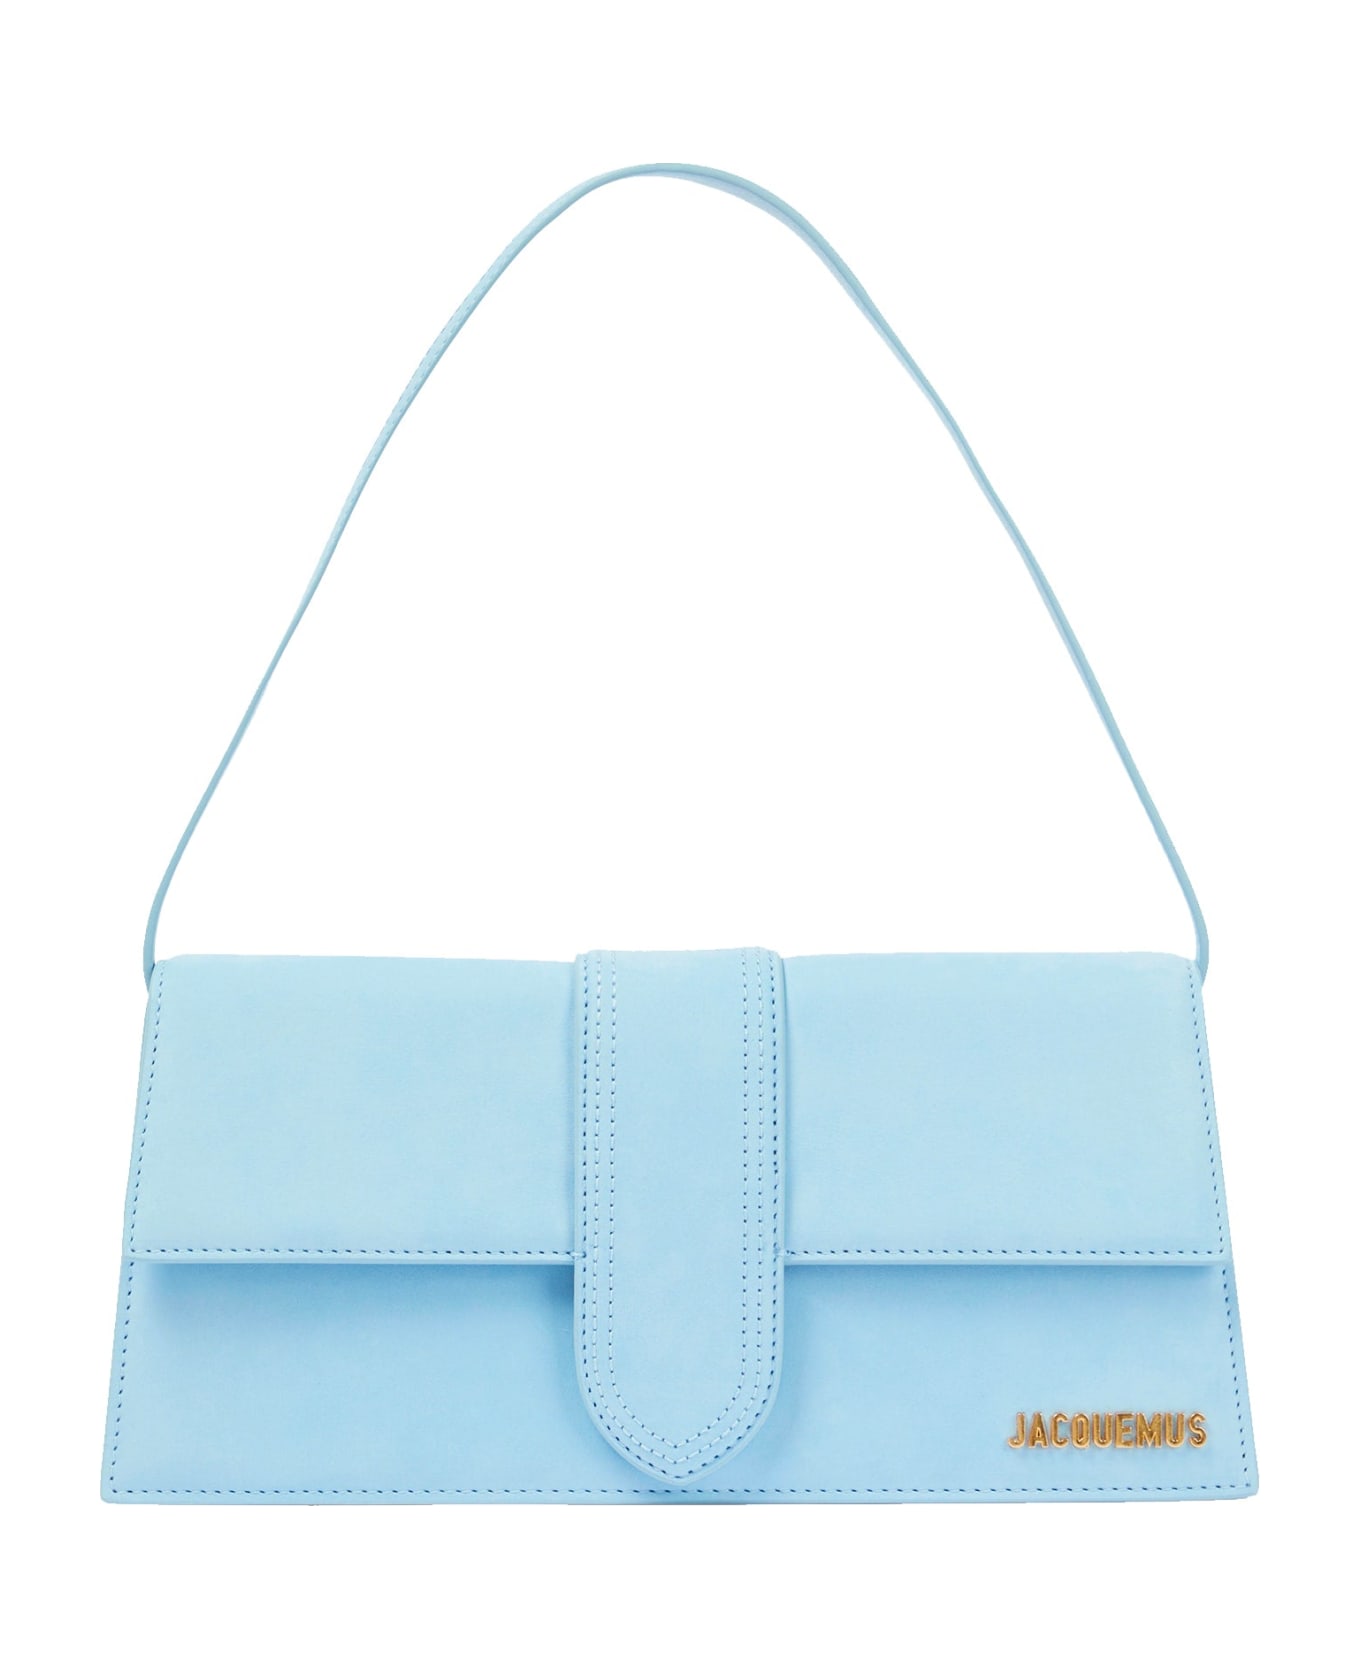 Jacquemus Le Bambino Long Bag - Blue